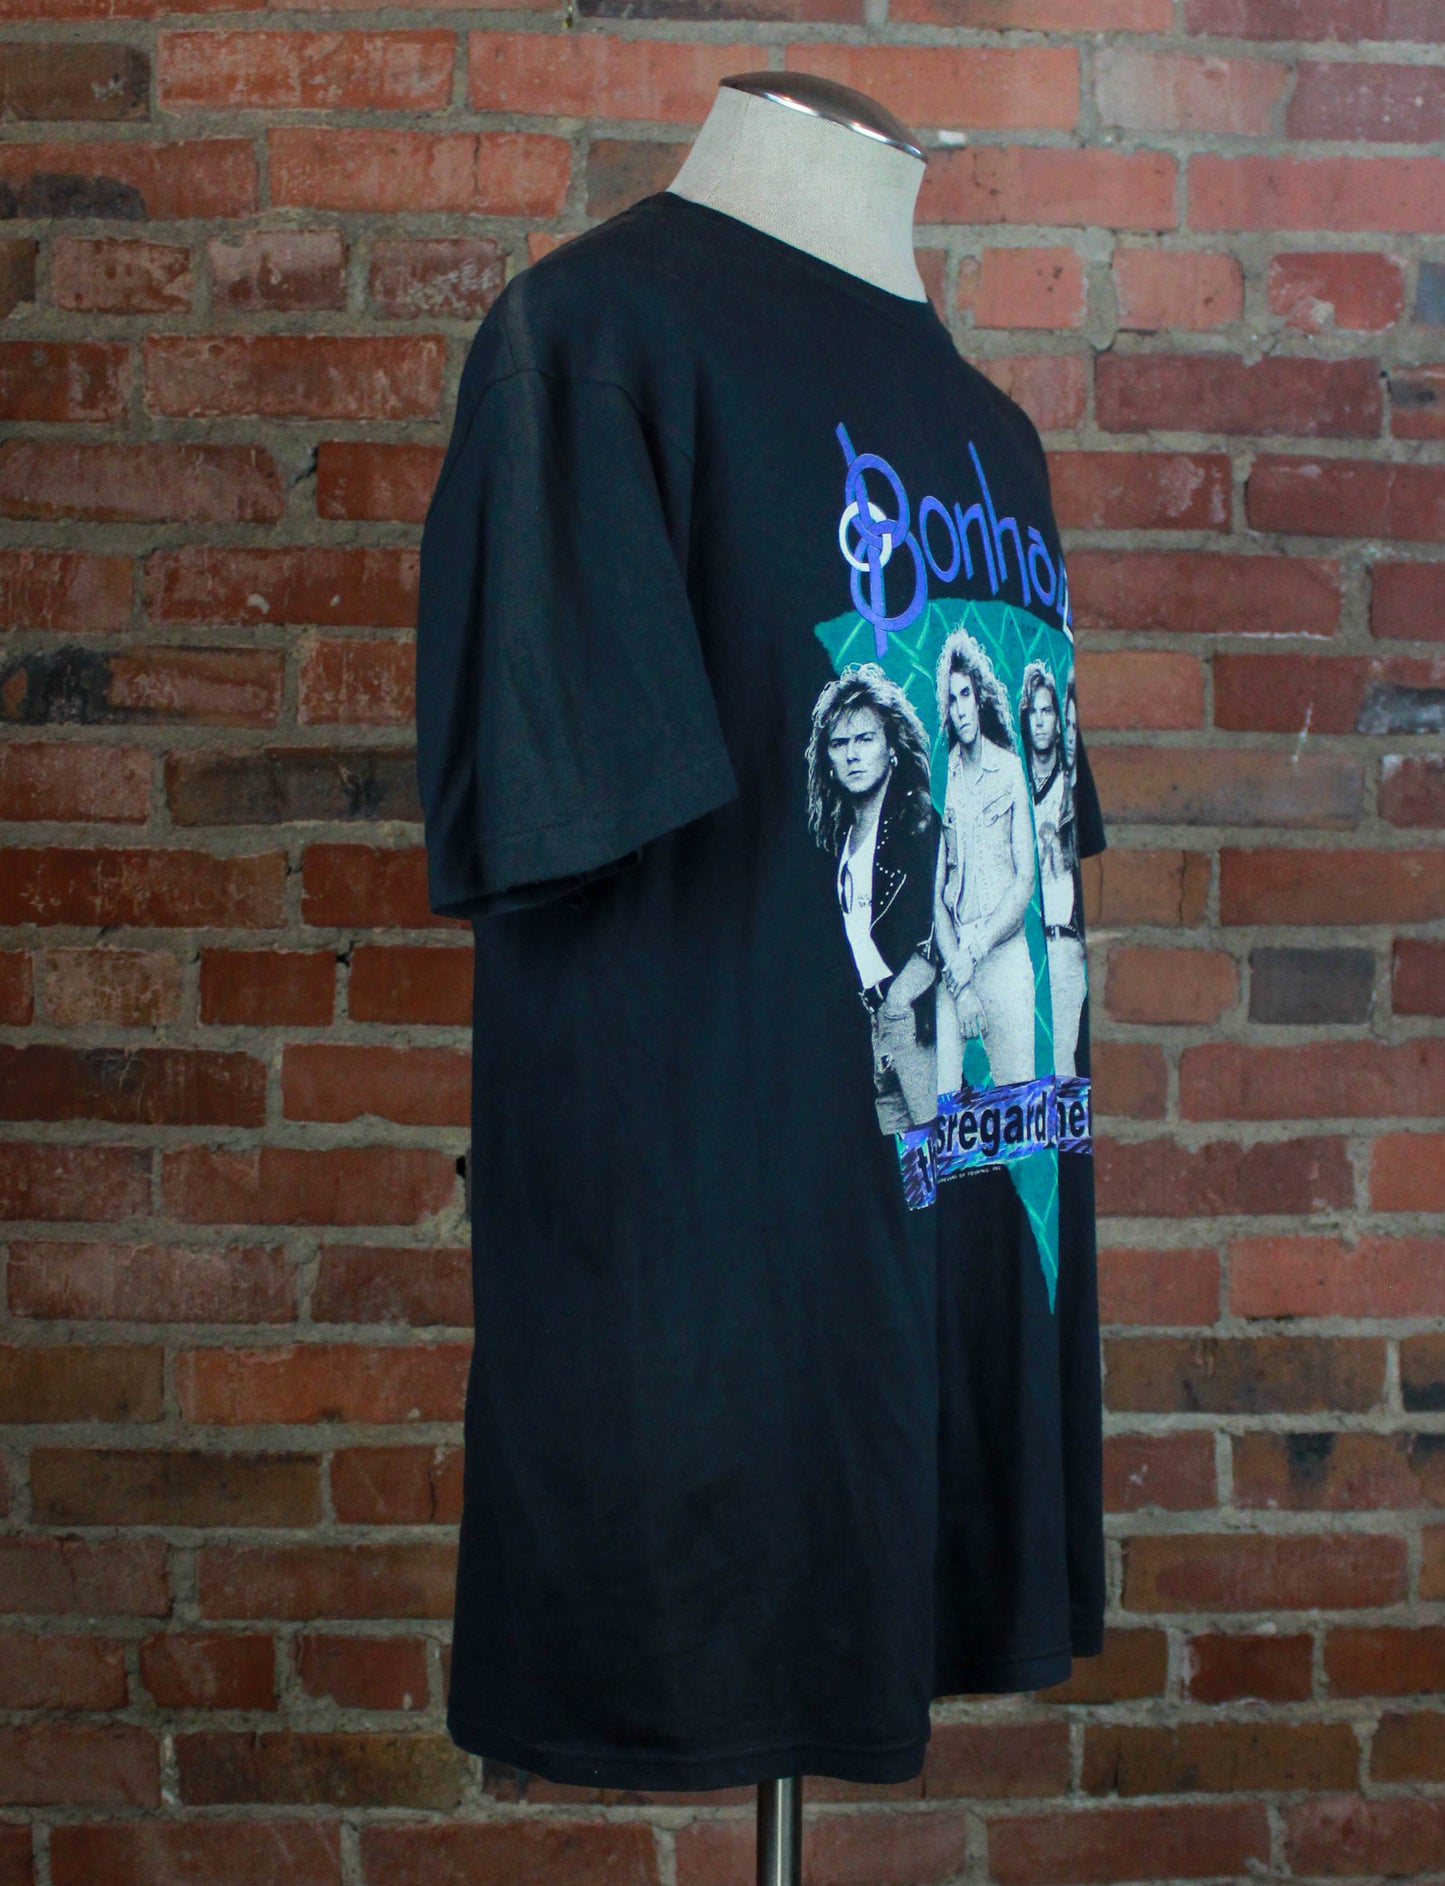 Vintage 1989-1990 Bonham Concert T Shirt Disregard of Timekeeping Black Unisex Large 